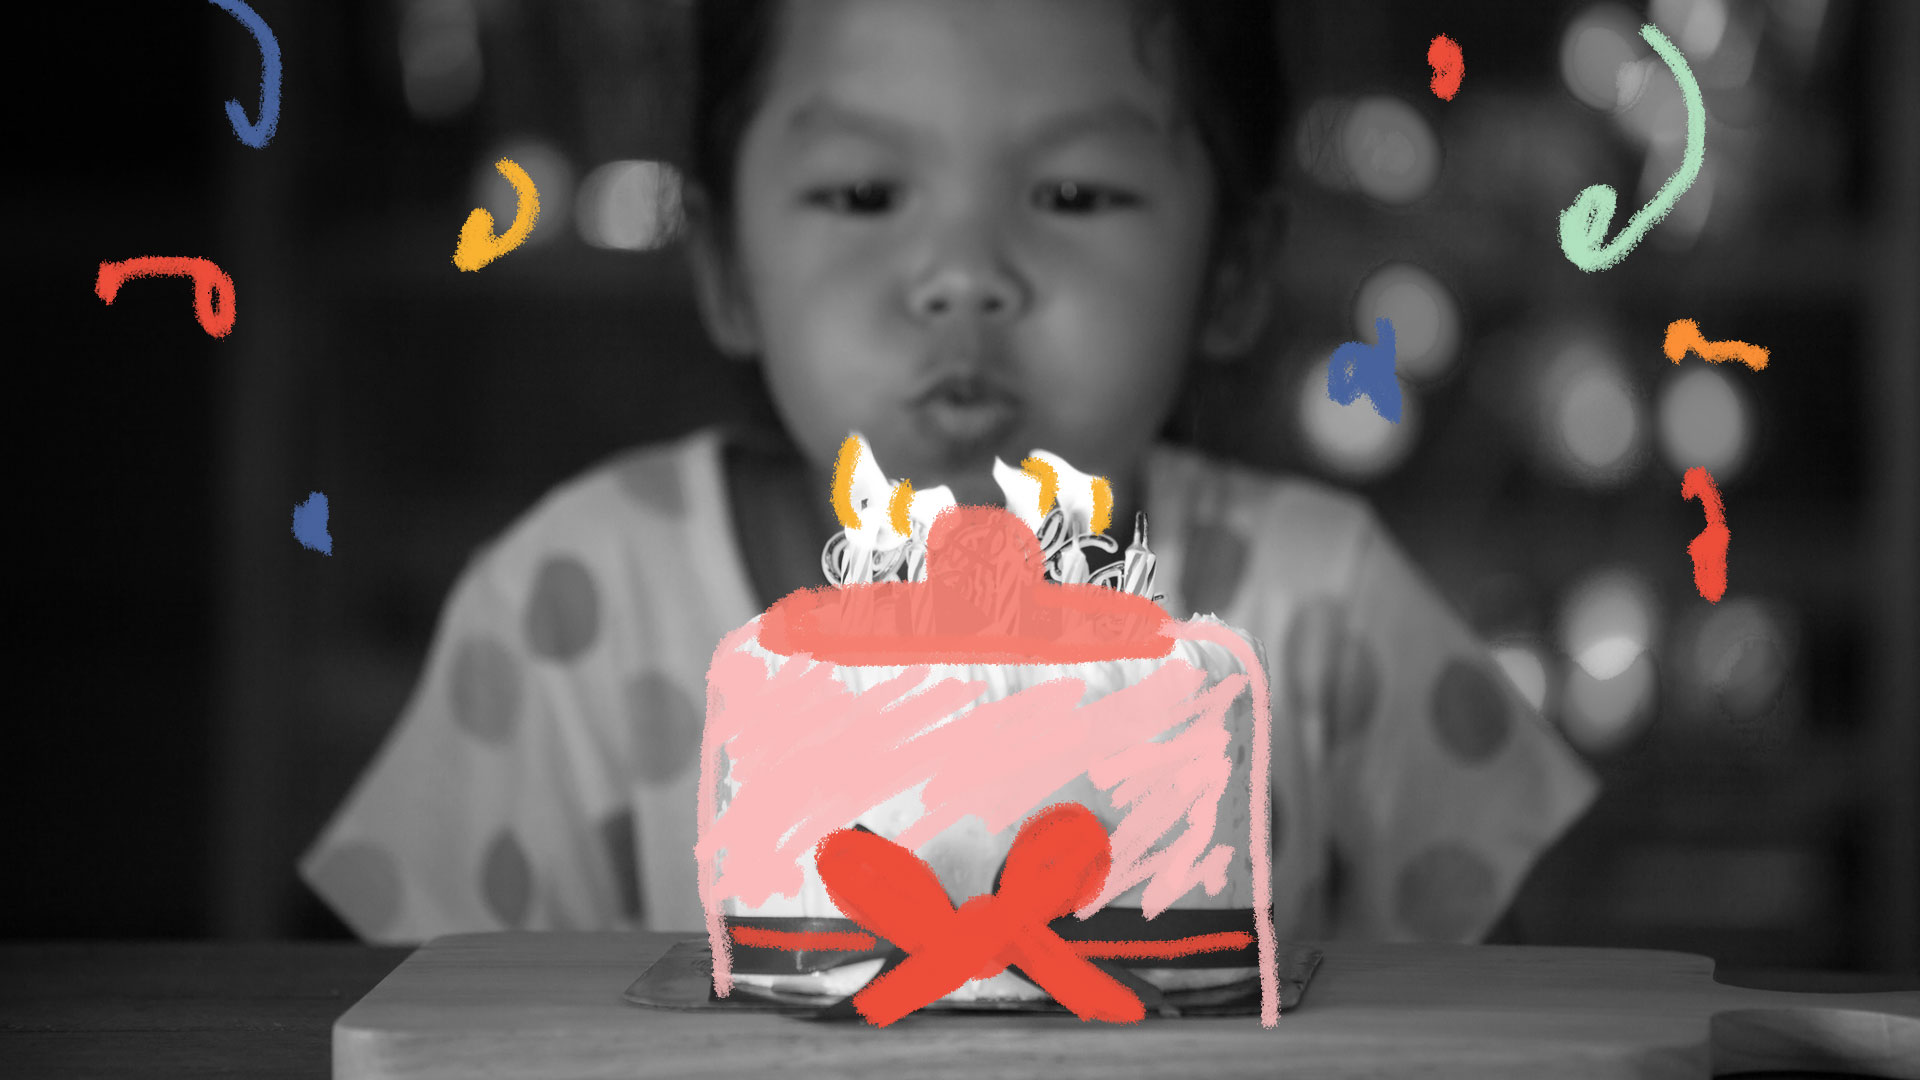 Menina assopra as velas do bolo de aniversário. Bolo em formato de peito.